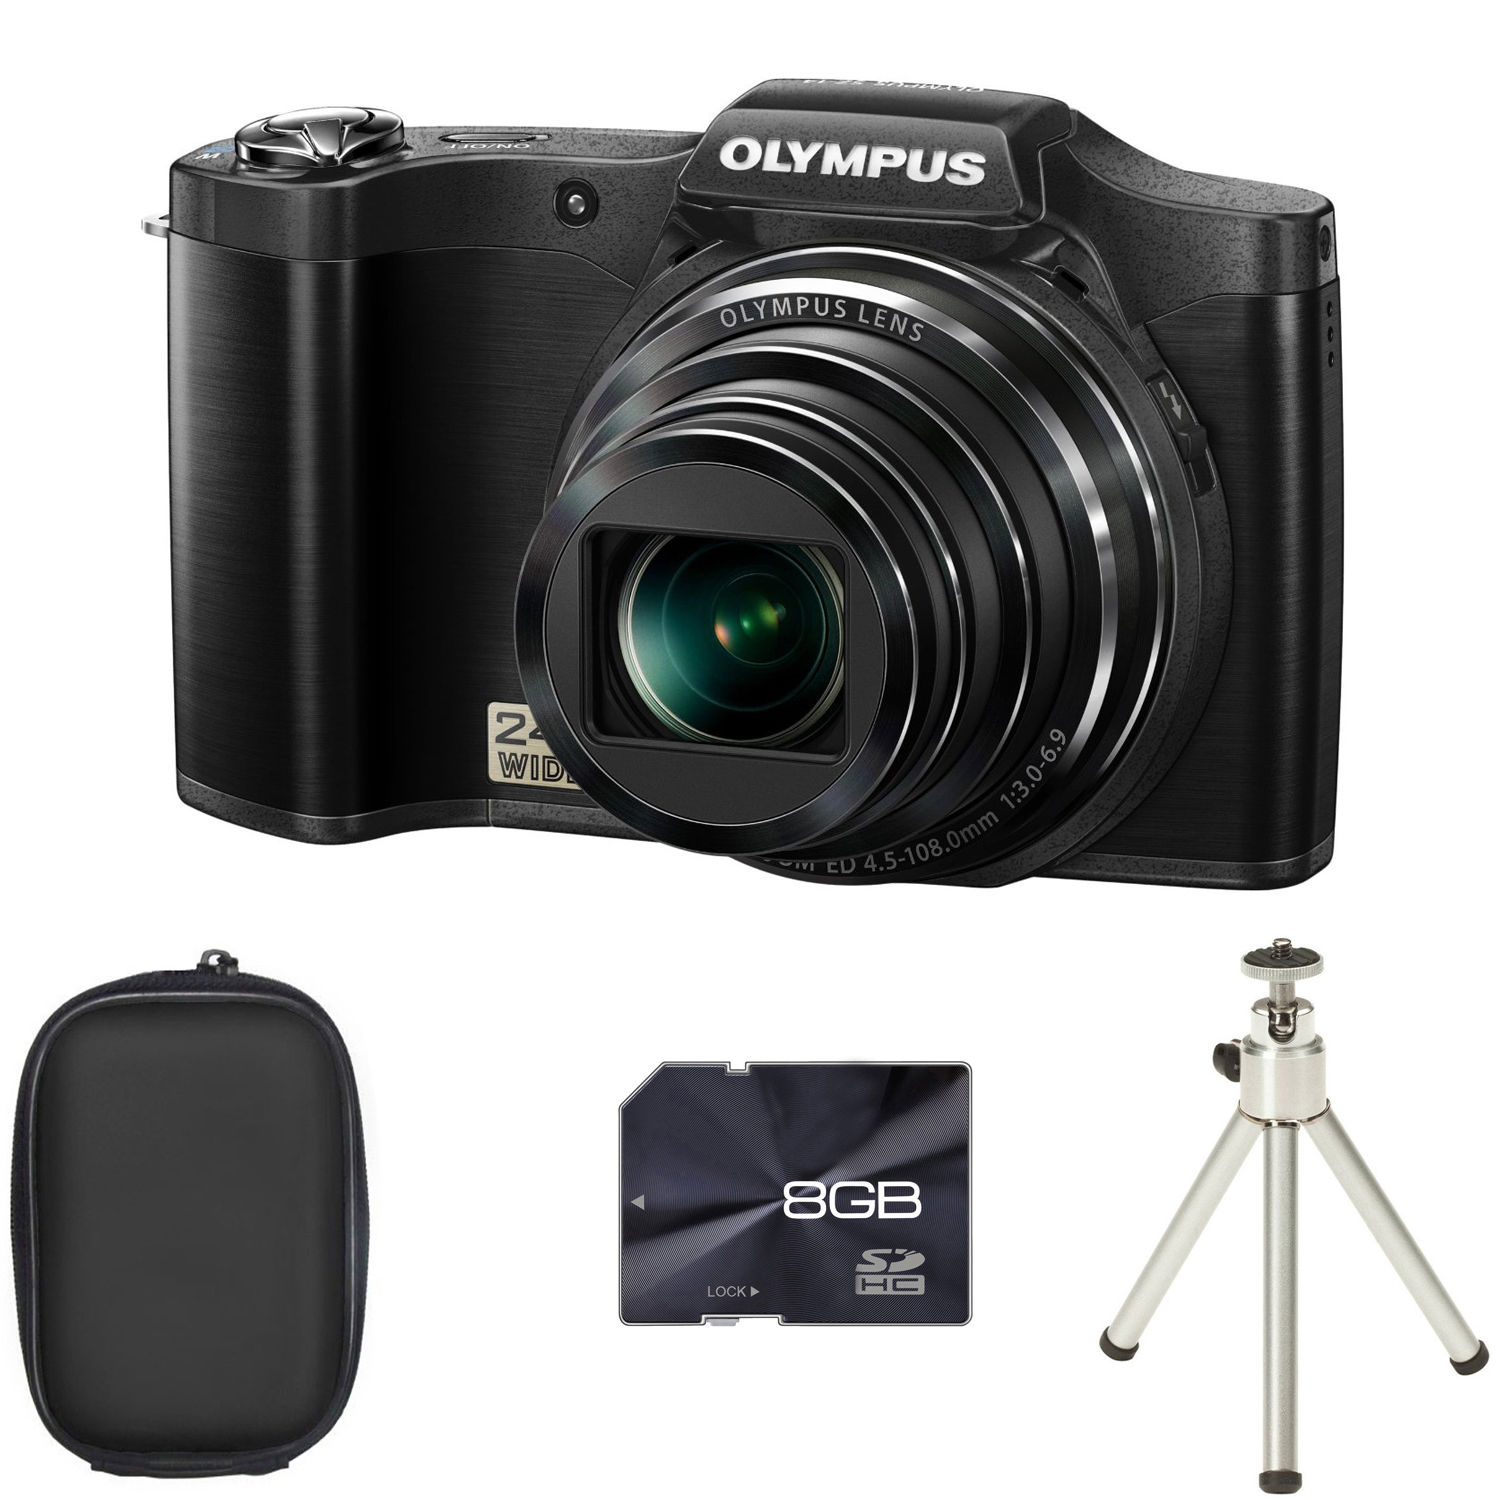 Olympus Stylus SZ-14 Digital Camera - Black + Case + 8GB Card + Tripod